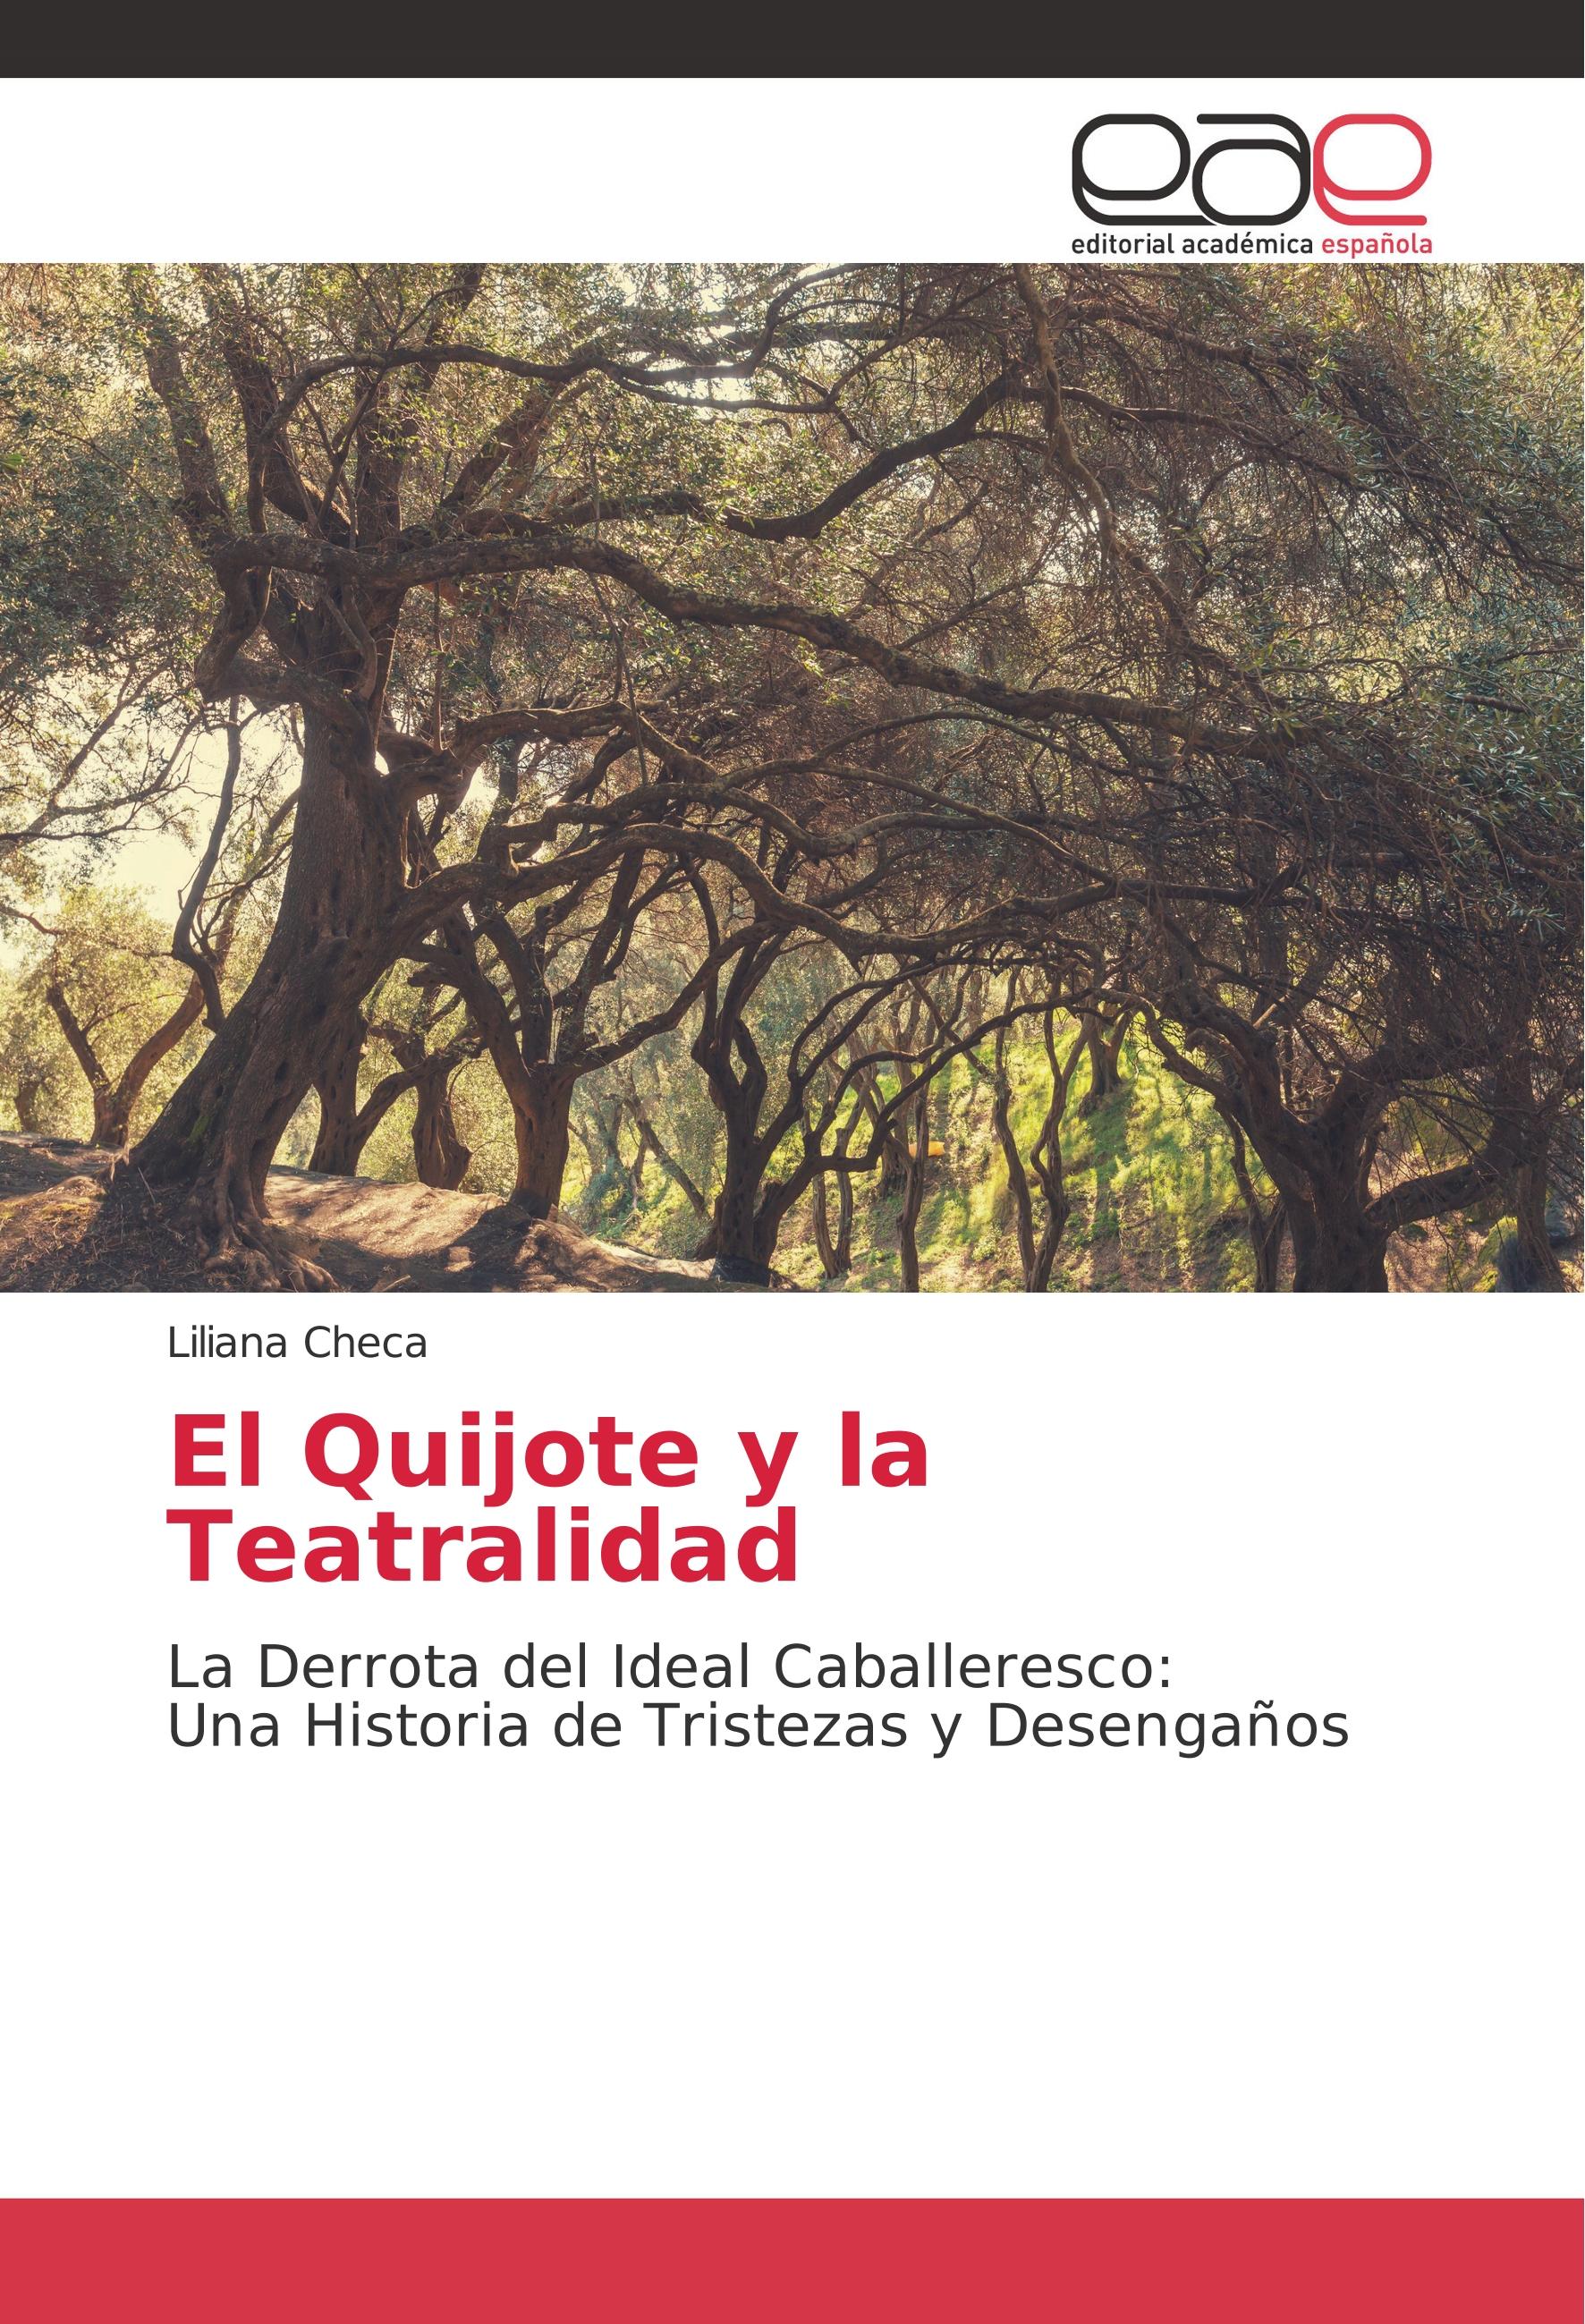 El Quijote y la Teatralidad - Liliana Checa